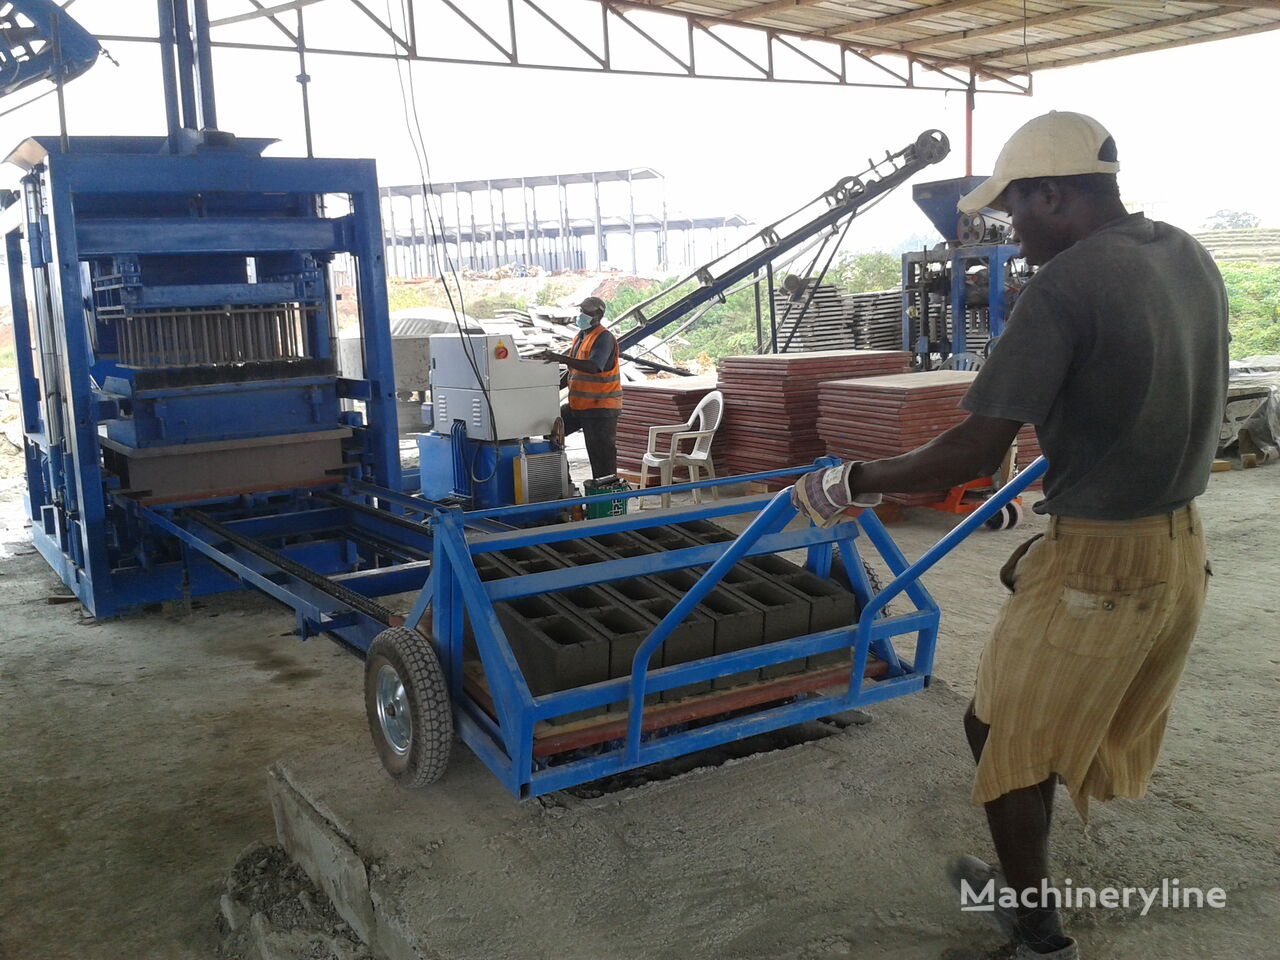 новое оборудование для производства бетонных блоков Conmach BlockKing-25MS Concrete Block Making Machine -12.000 units/shift